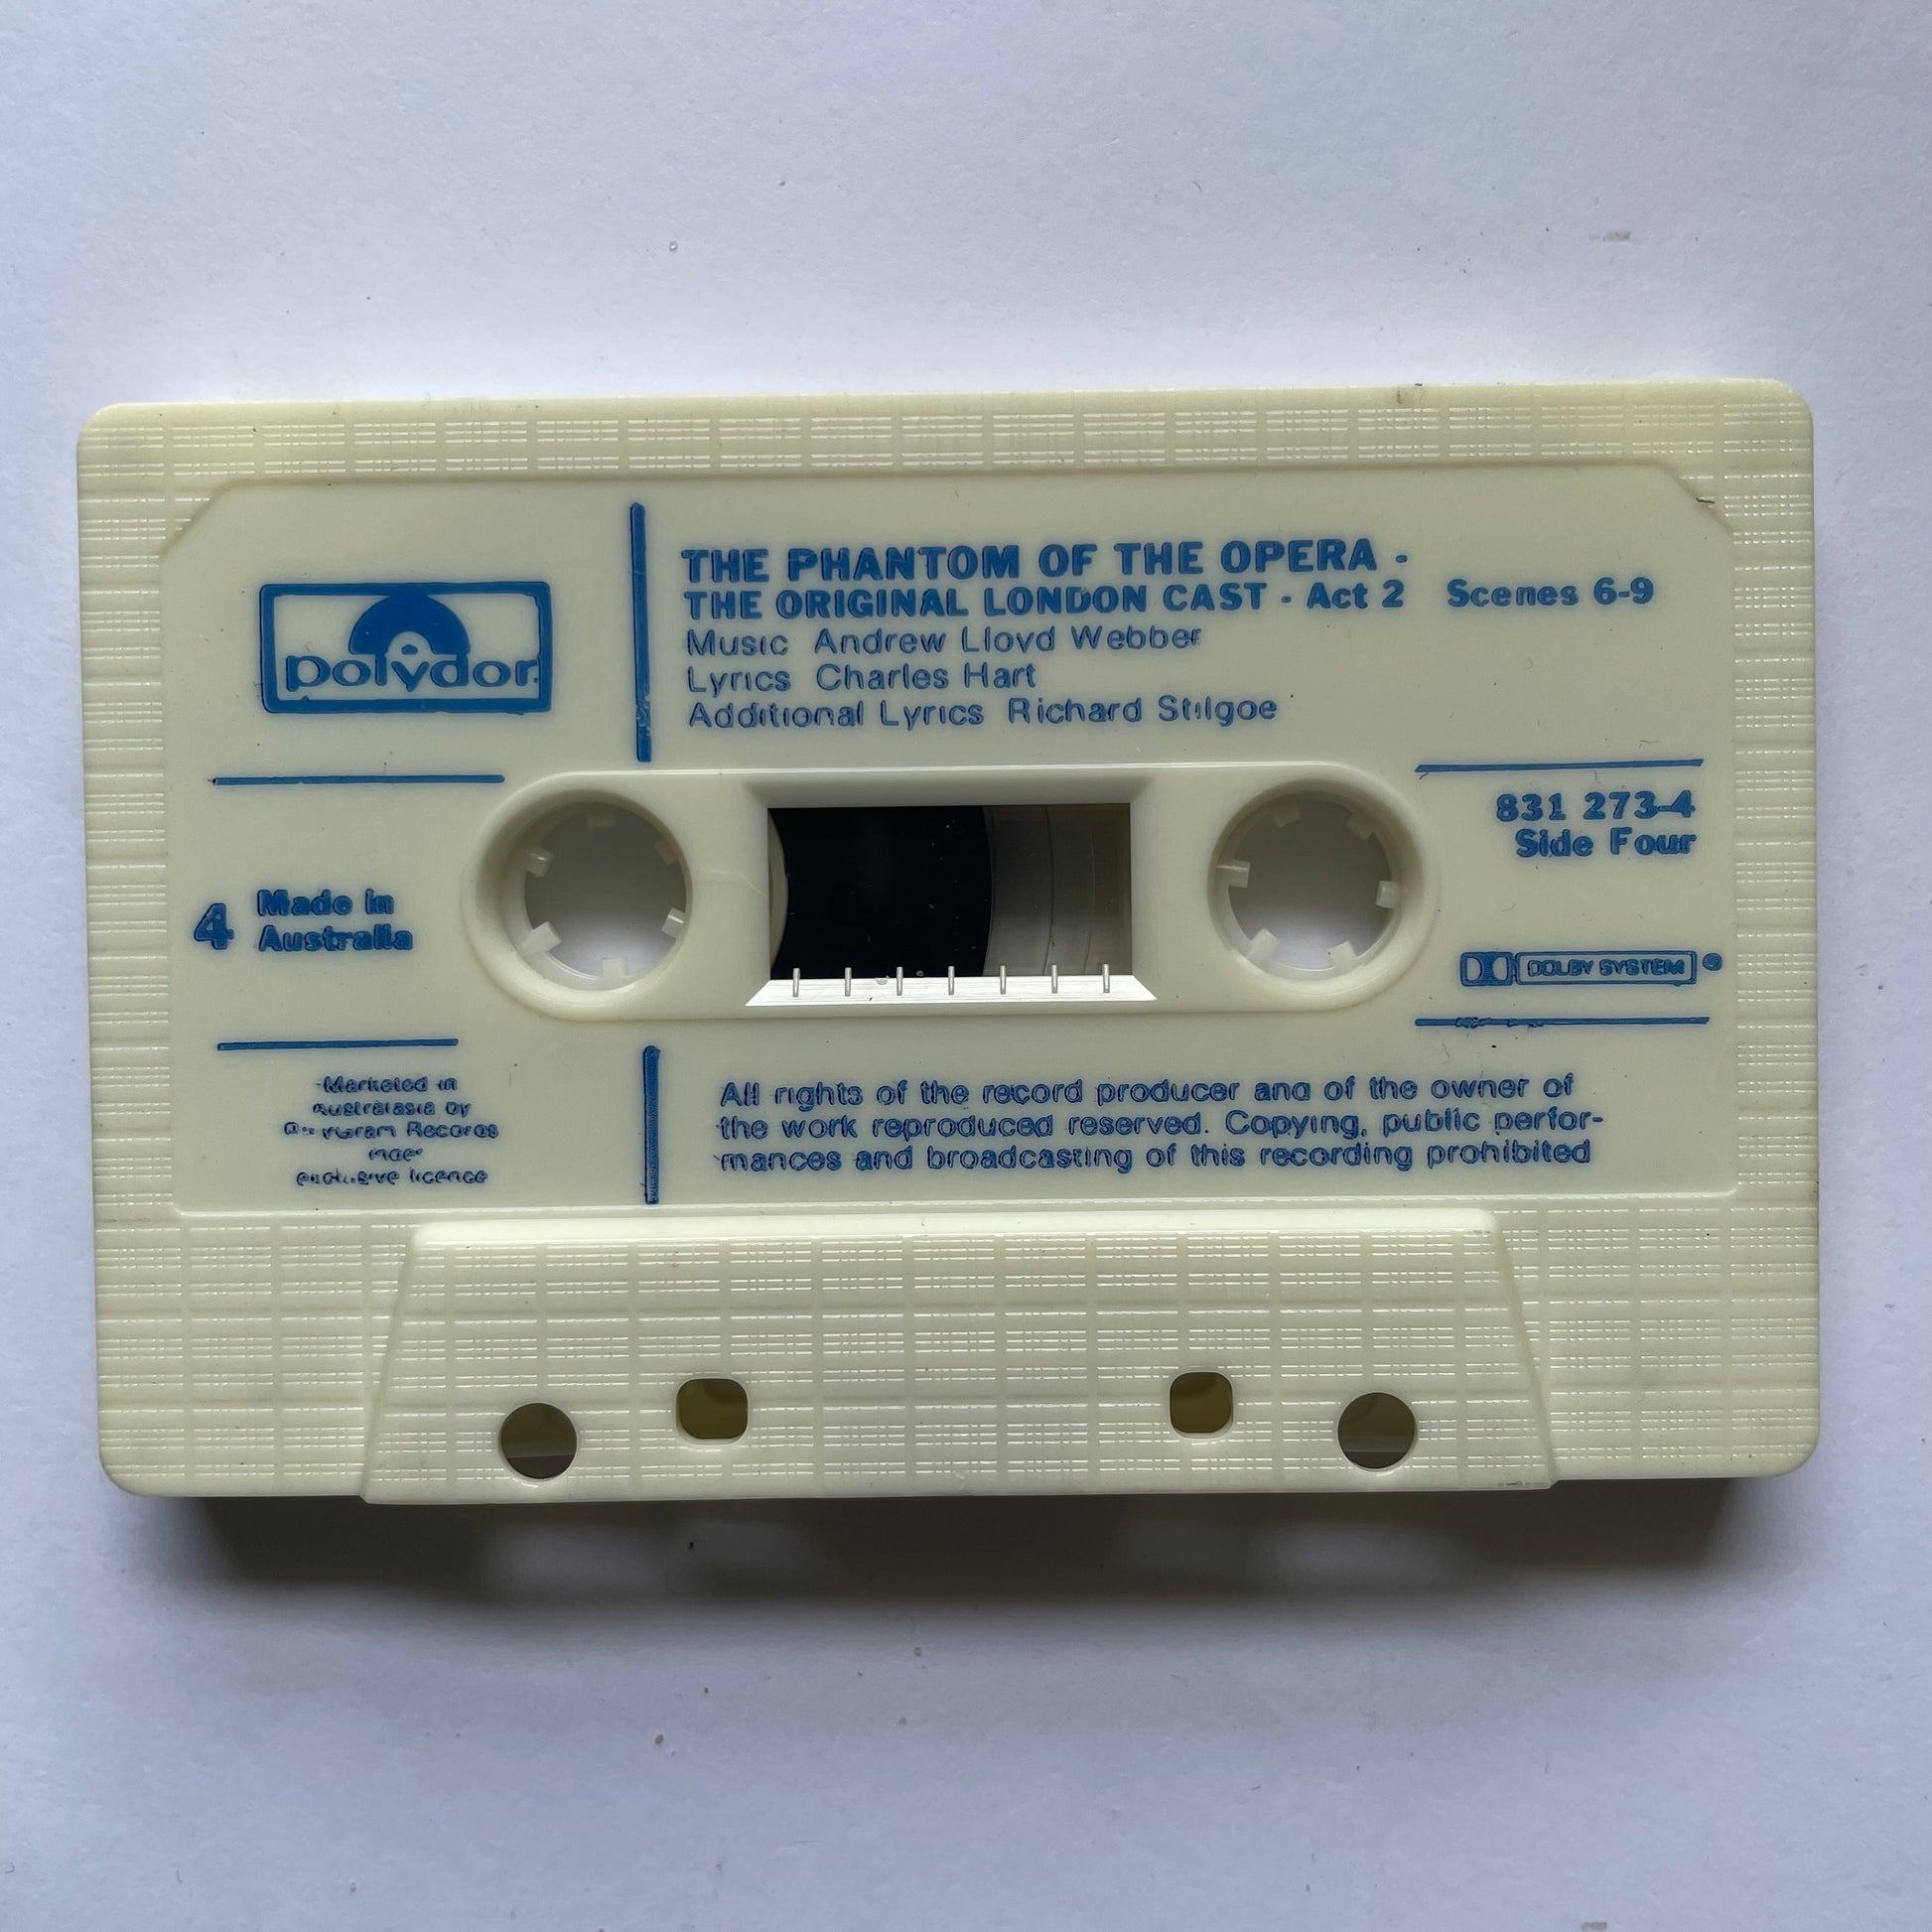 Tape Cassette The Phantom of the Opera side 3 